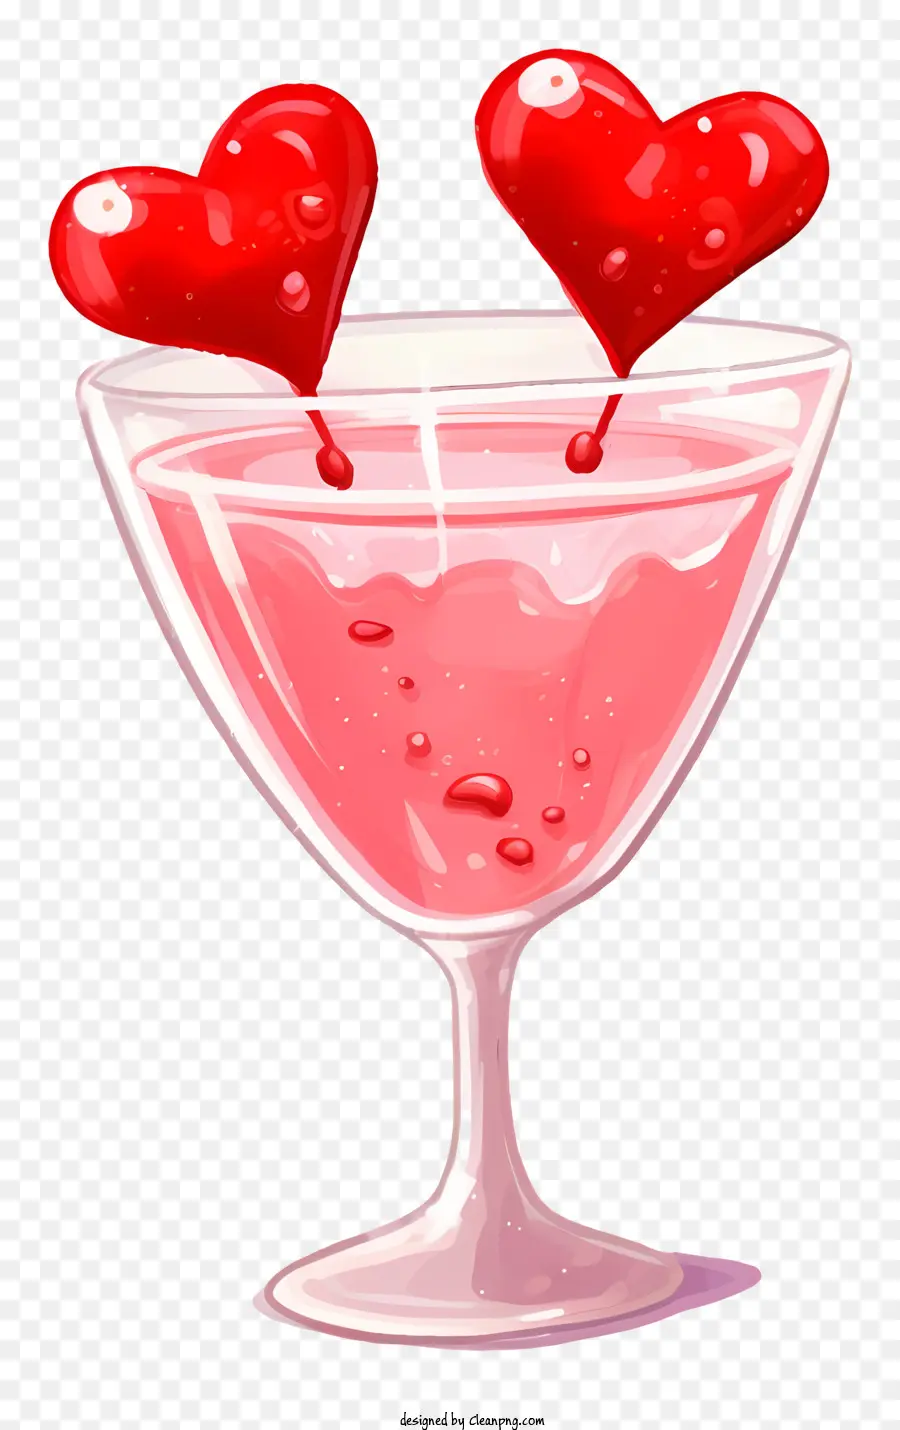 Bàn tay vẽ ngày lễ tình nhân cocktail martini martini martini martini pink cocktail - Kính Martini với chất lỏng màu hồng và trái tim